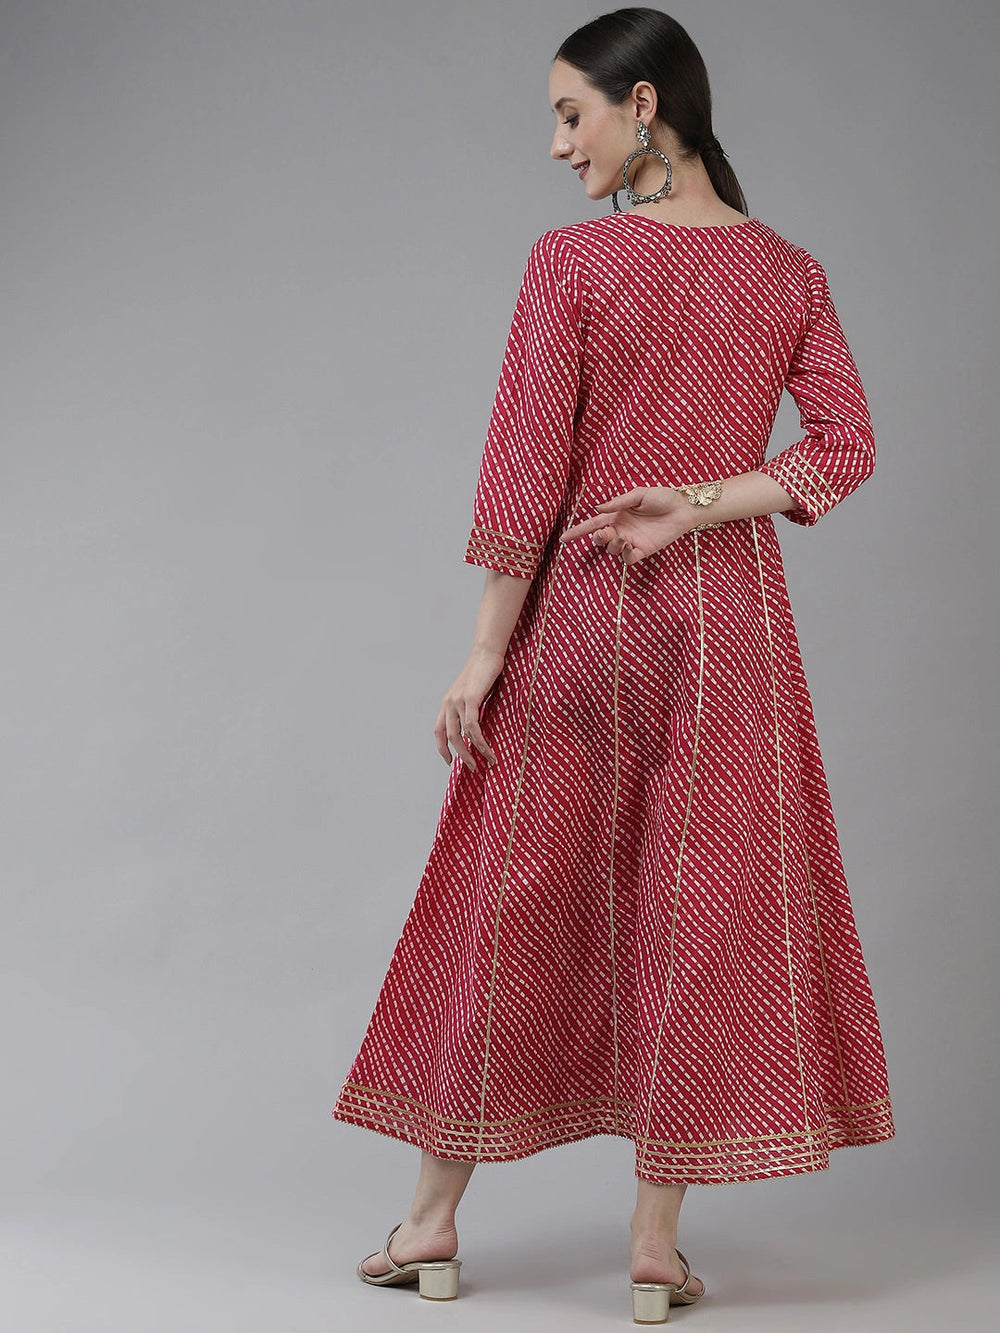 Pink Ethnic Motifs Maxi Dress-Yufta Store-9778DRSPKS